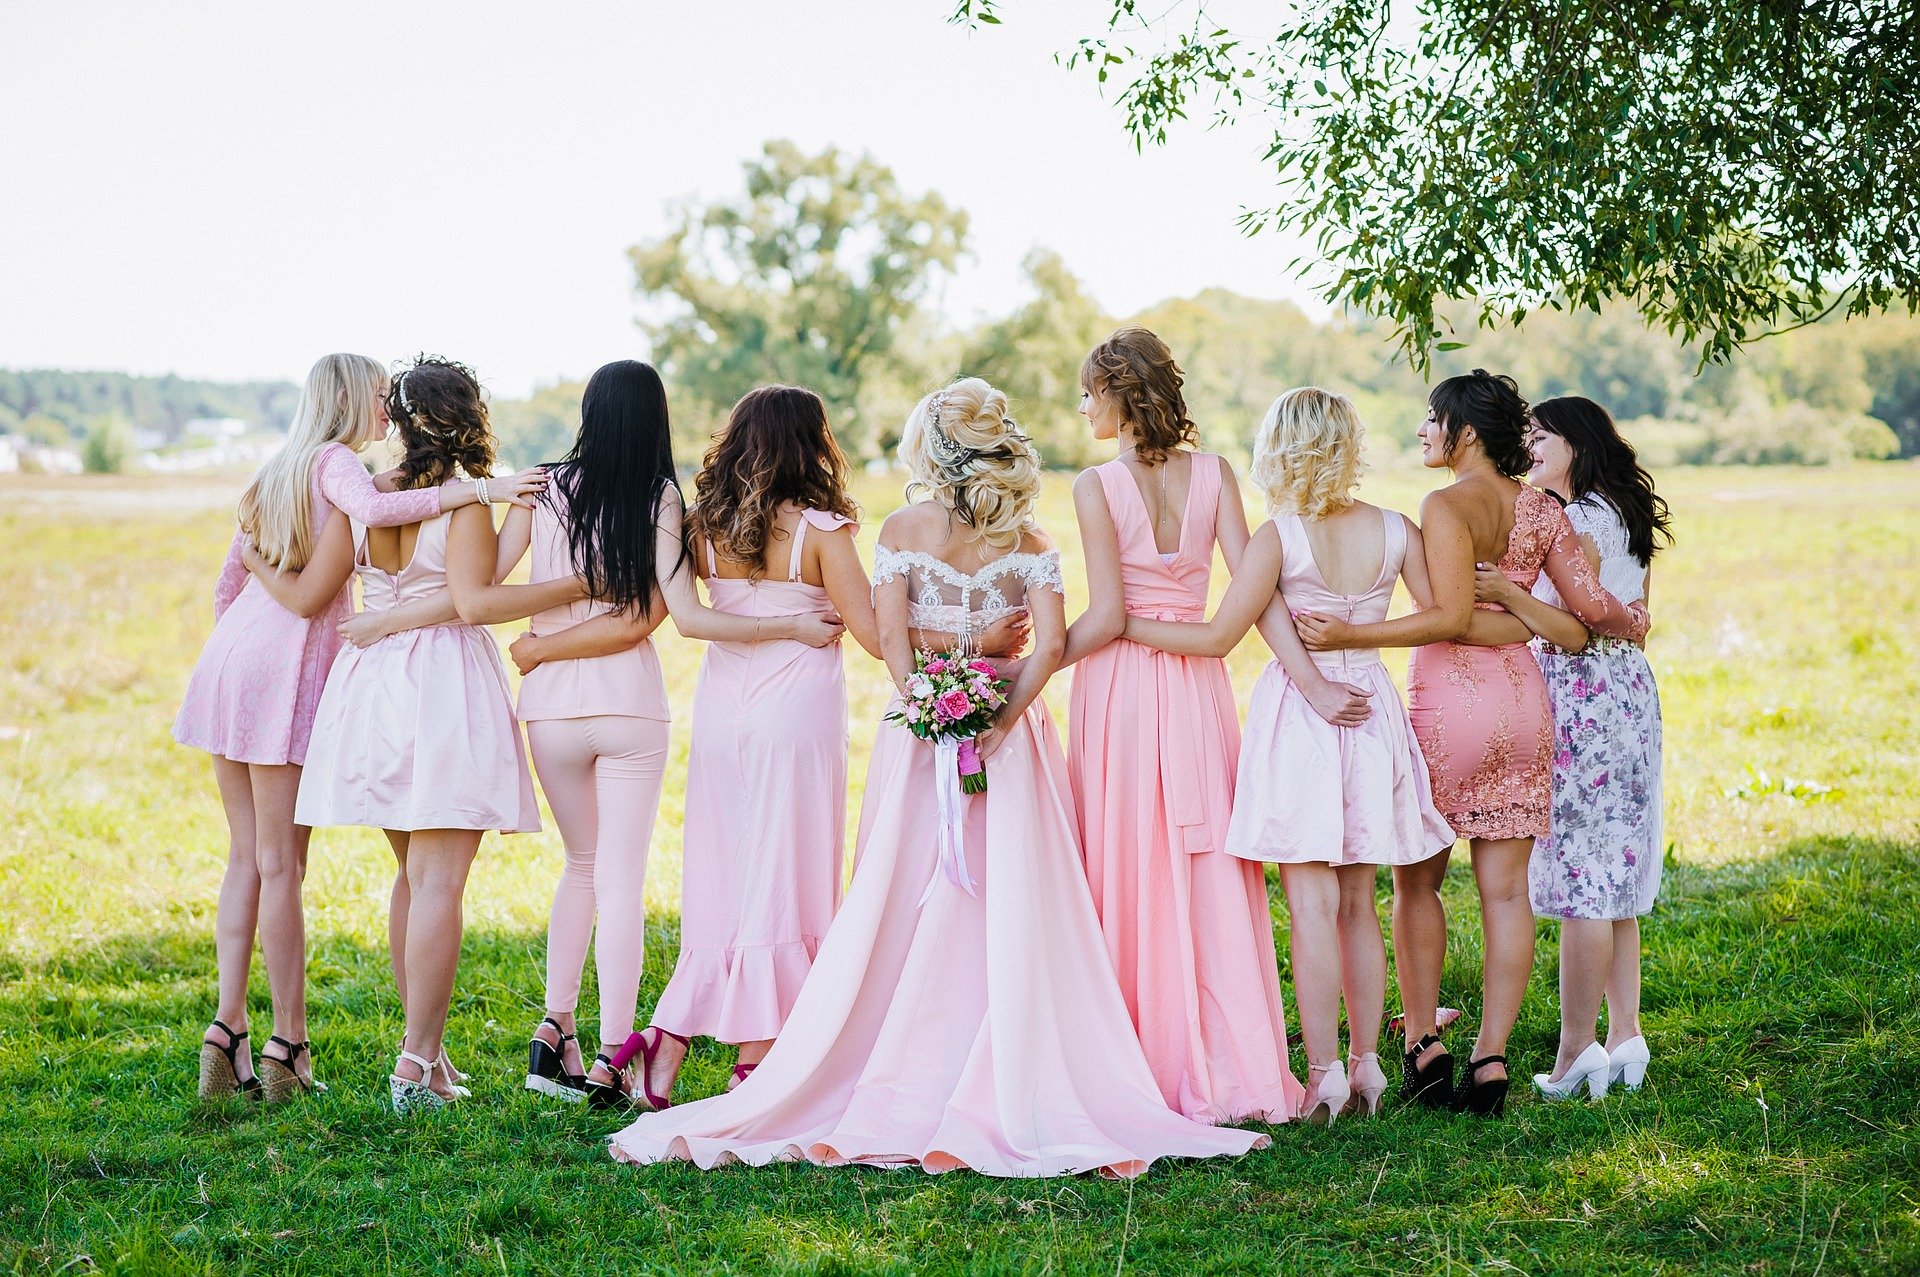 Mujer vestida de novia y rodeada de amigas. Fuente: Pixabay